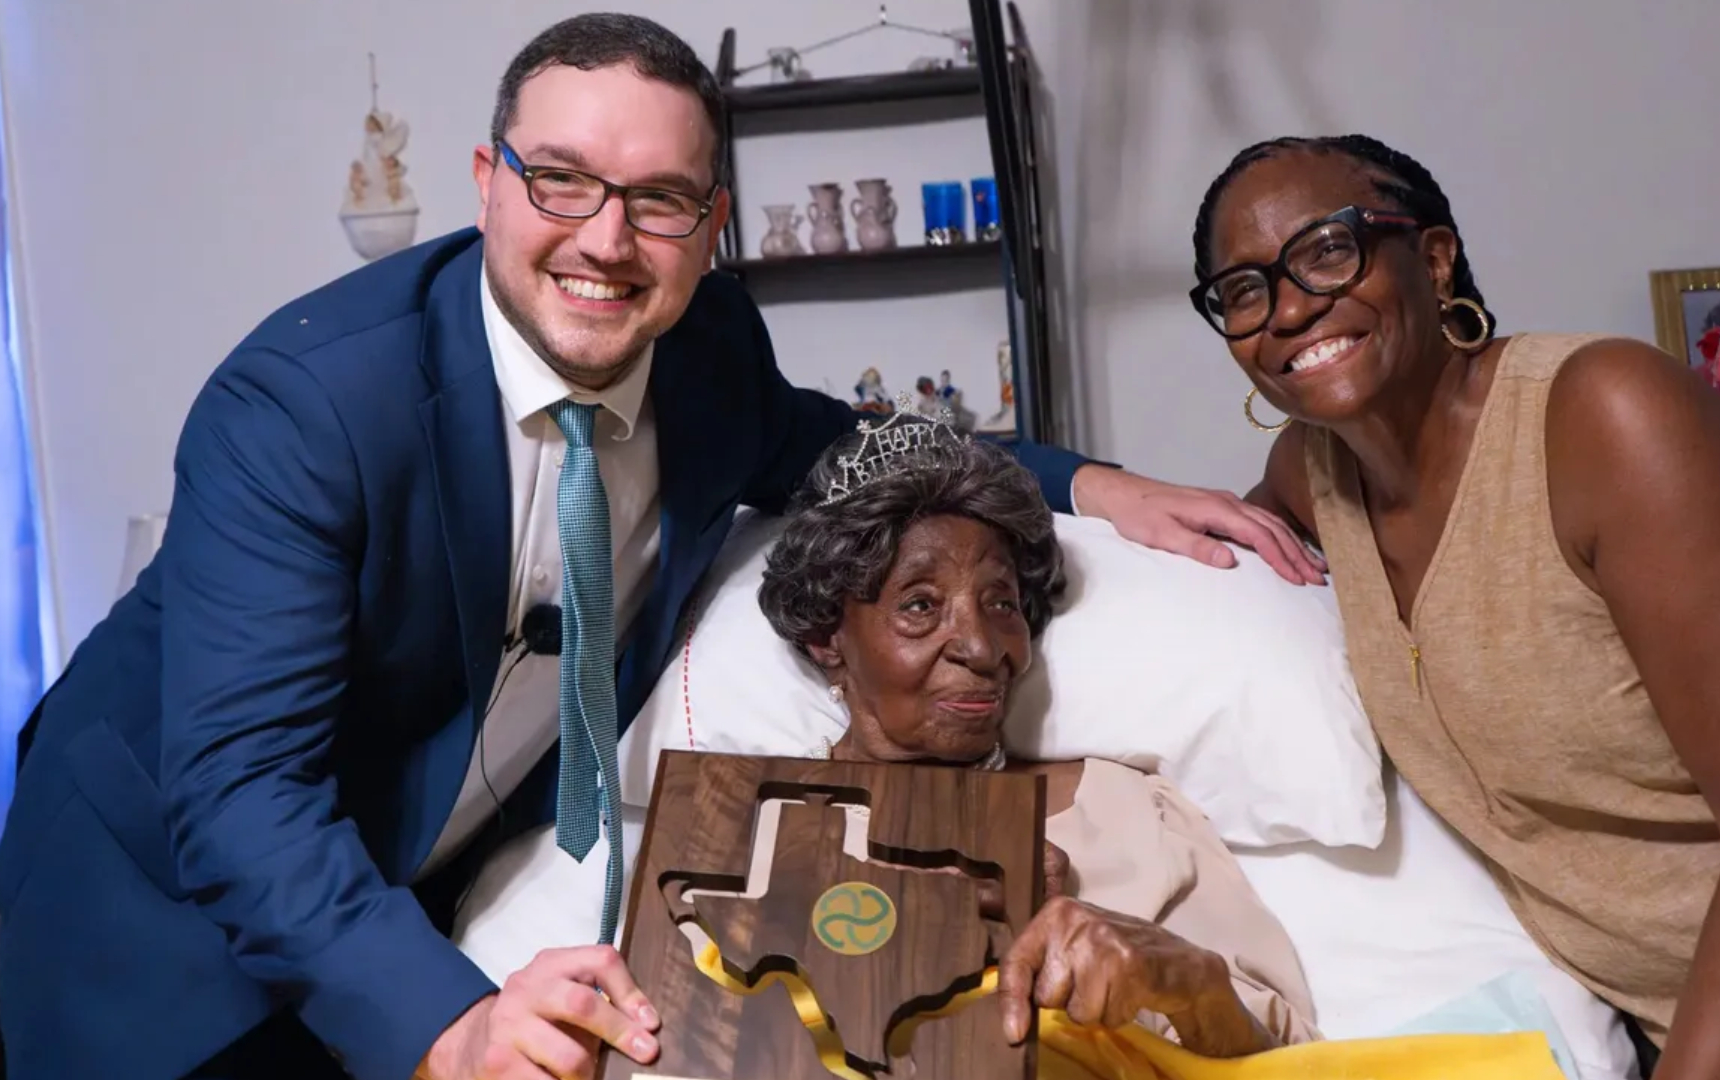 La mujer de 114 años recibió reconocimientos por llegar a tan avanzada edad.